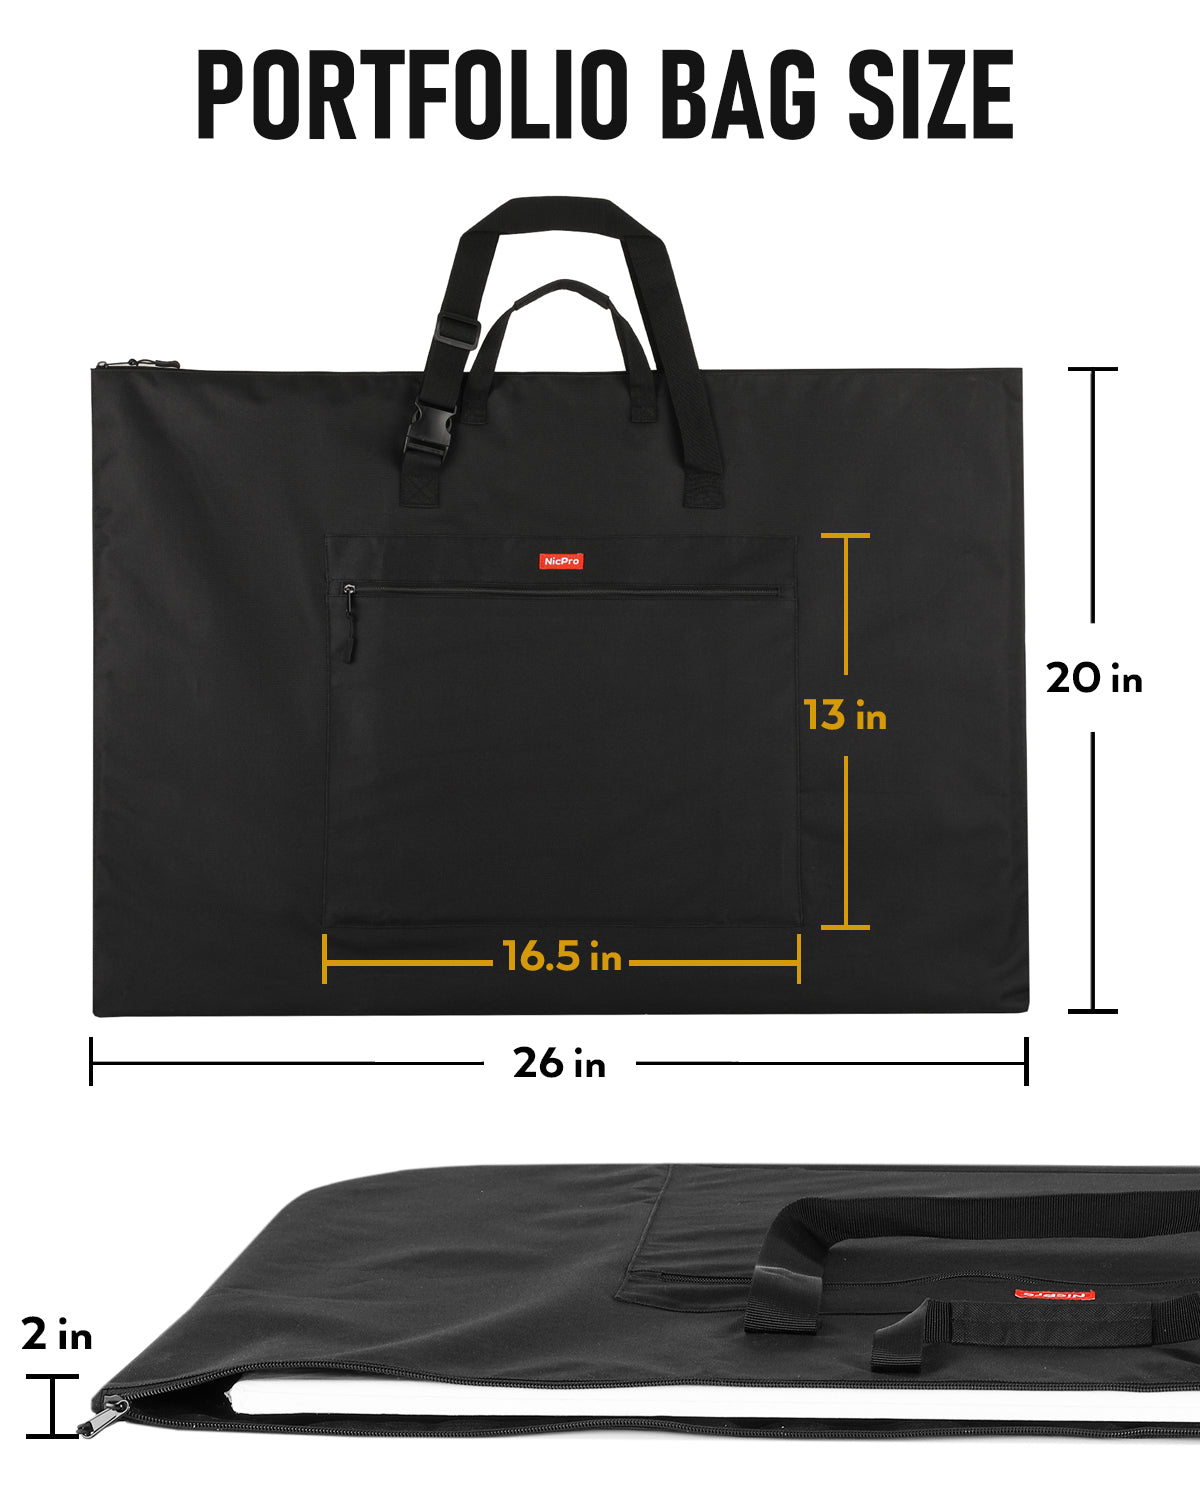 Denis - The Portfolio Bag – Kompanero